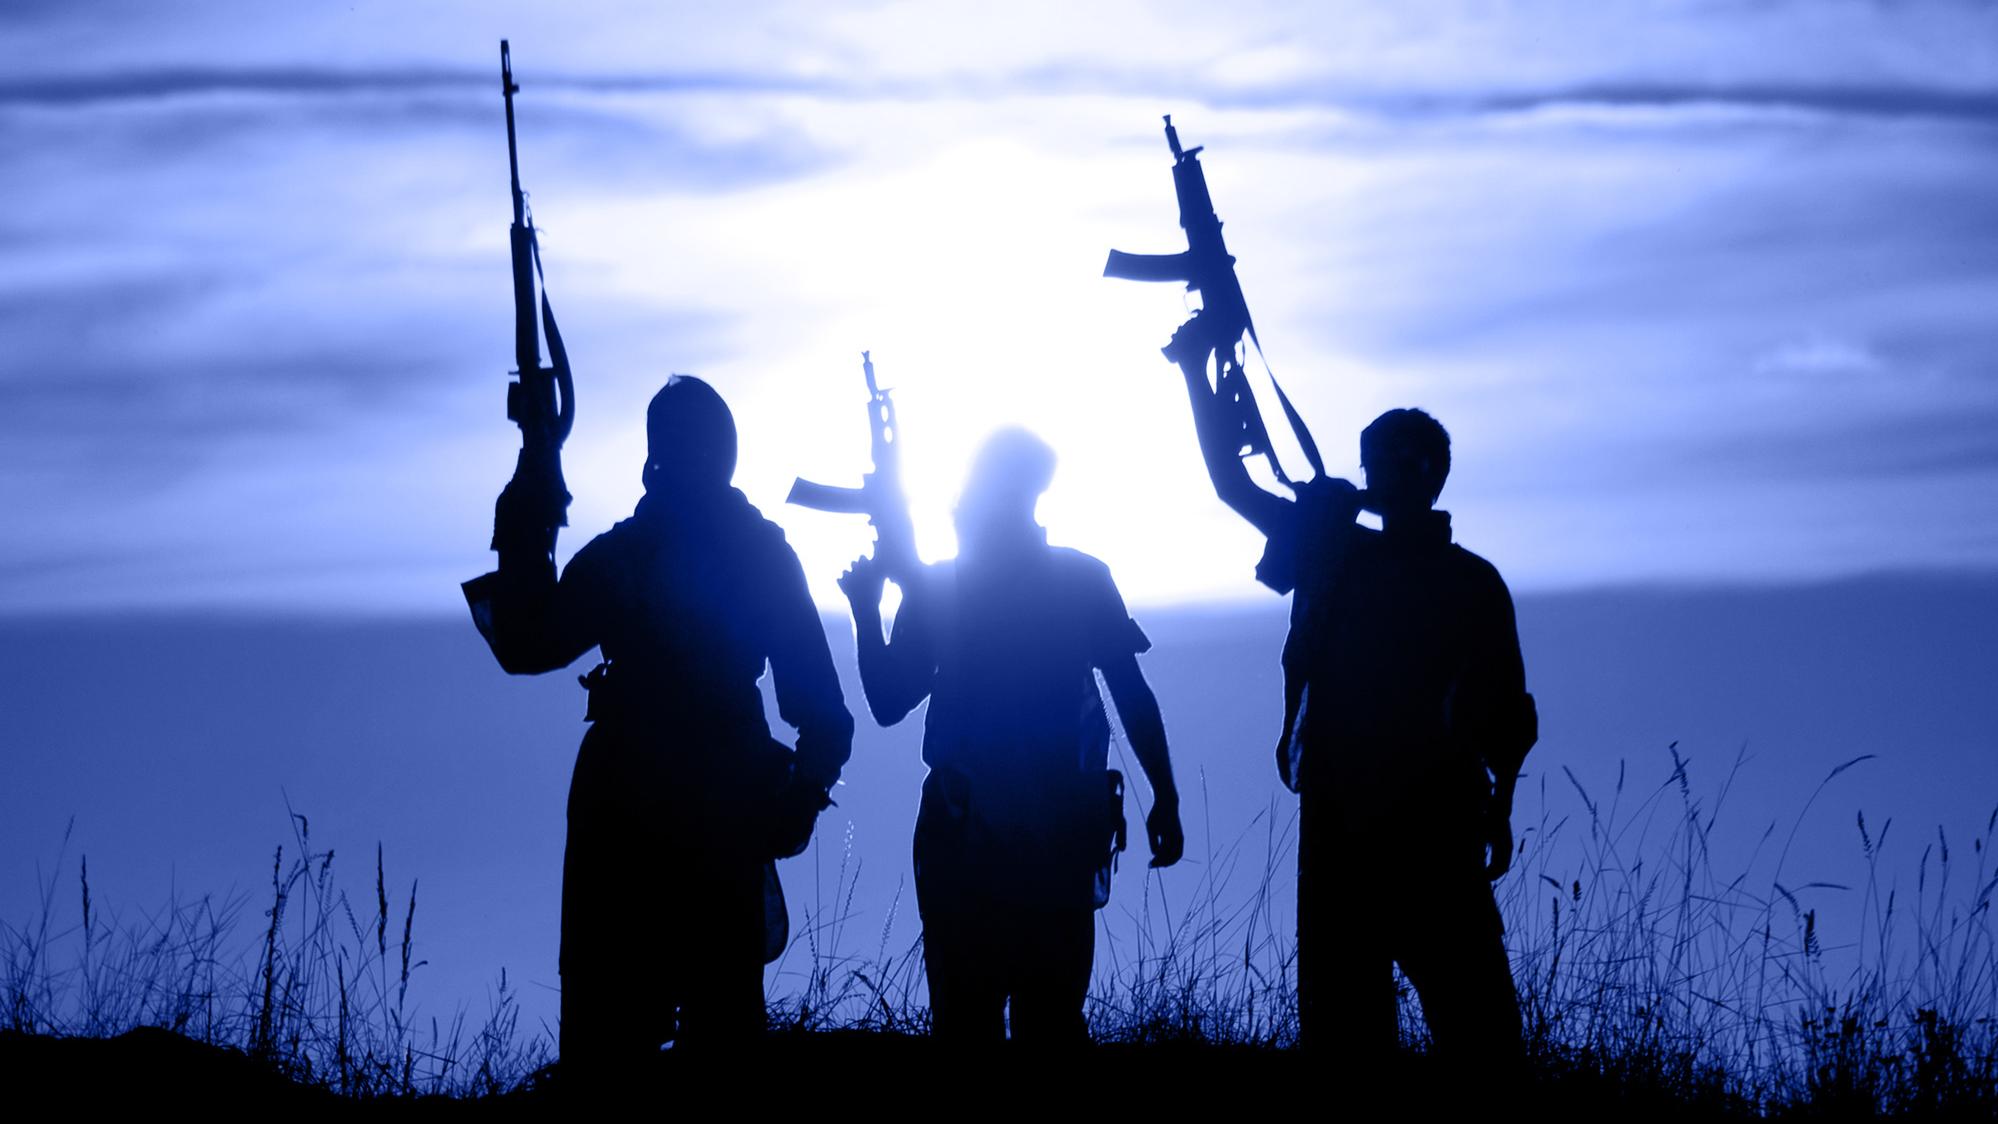 la lutte contre le terrorisme islamiste par la DGSI silhouettes de djihadistes